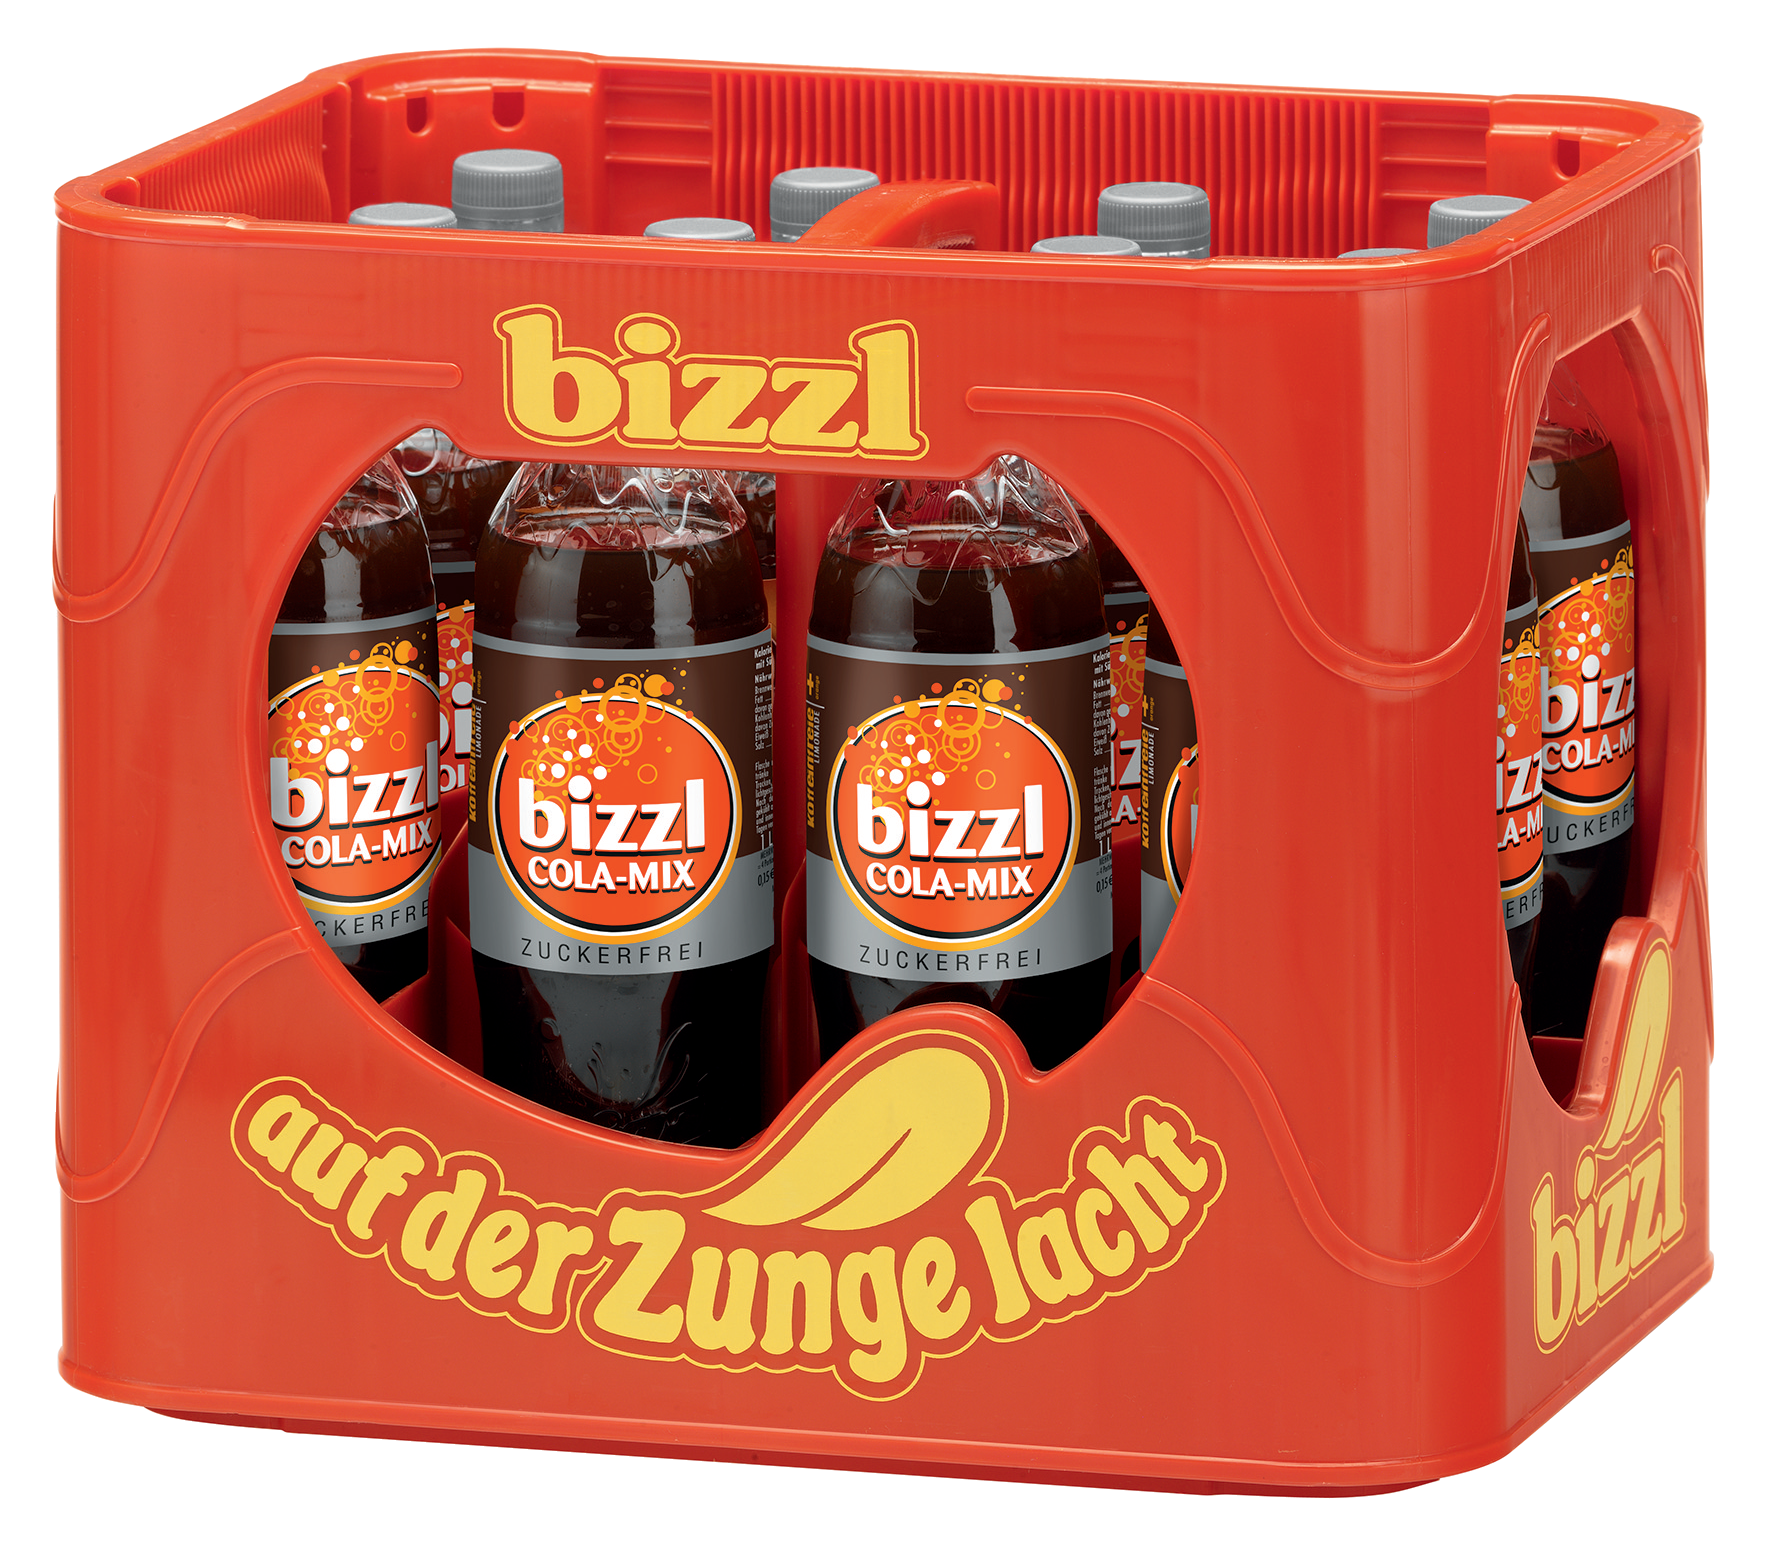 Bizzl Cola Mix Zuckerfrei Kasten 12 x 1 l PET Mehrweg